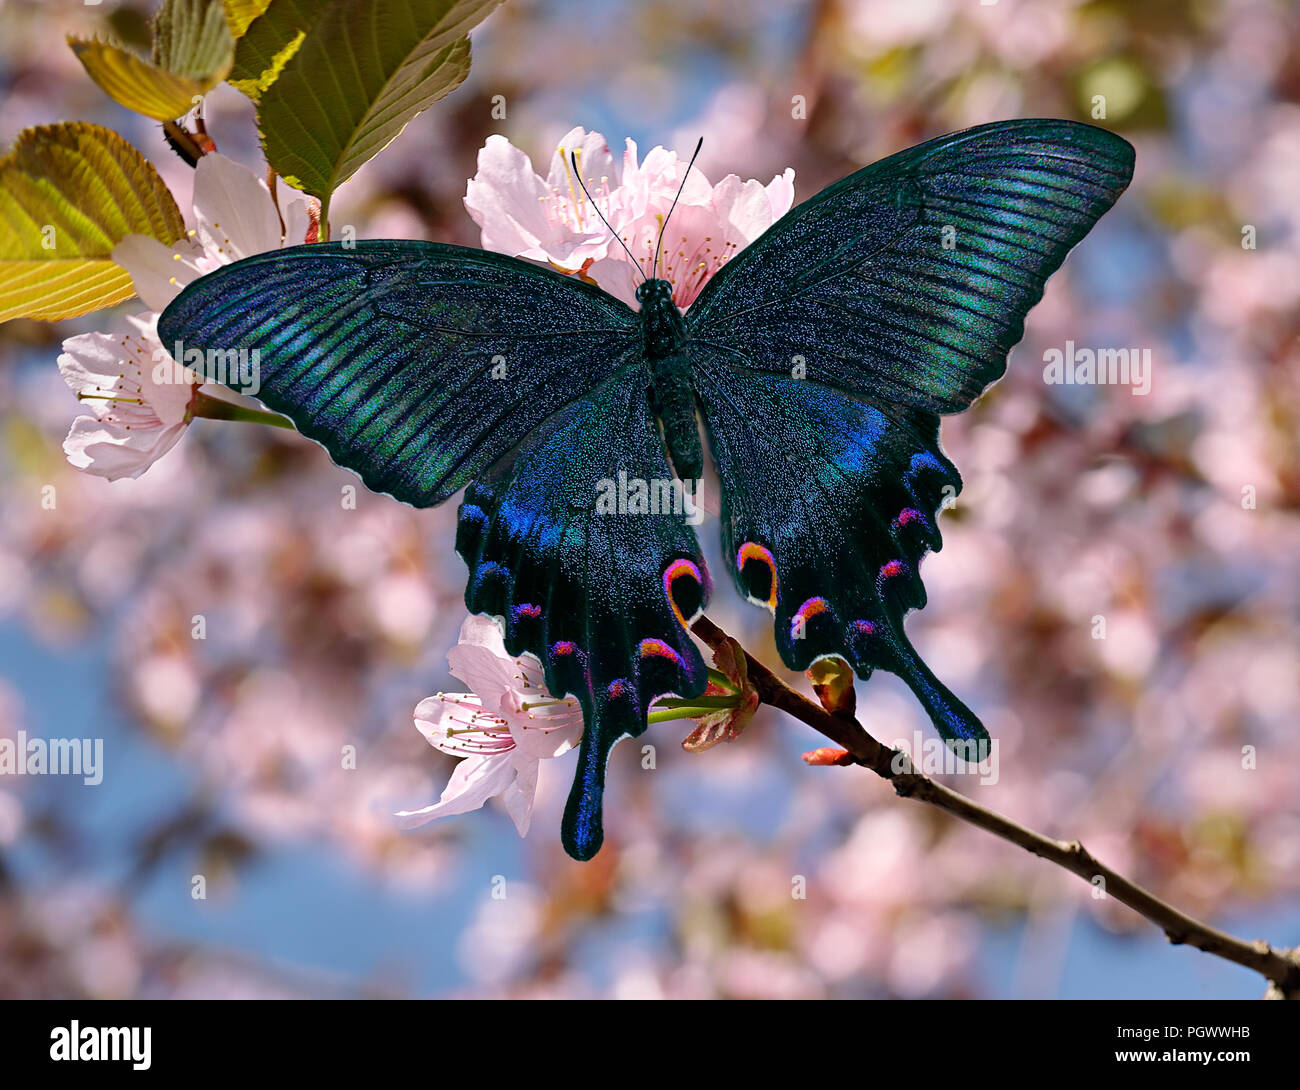 Mariposa Papilio maackii alpino o negro o azul machaon Papilio canadensis, Papilionidae familia, rosa sakura o flor de cerezo orientales con che borrosa Foto de stock